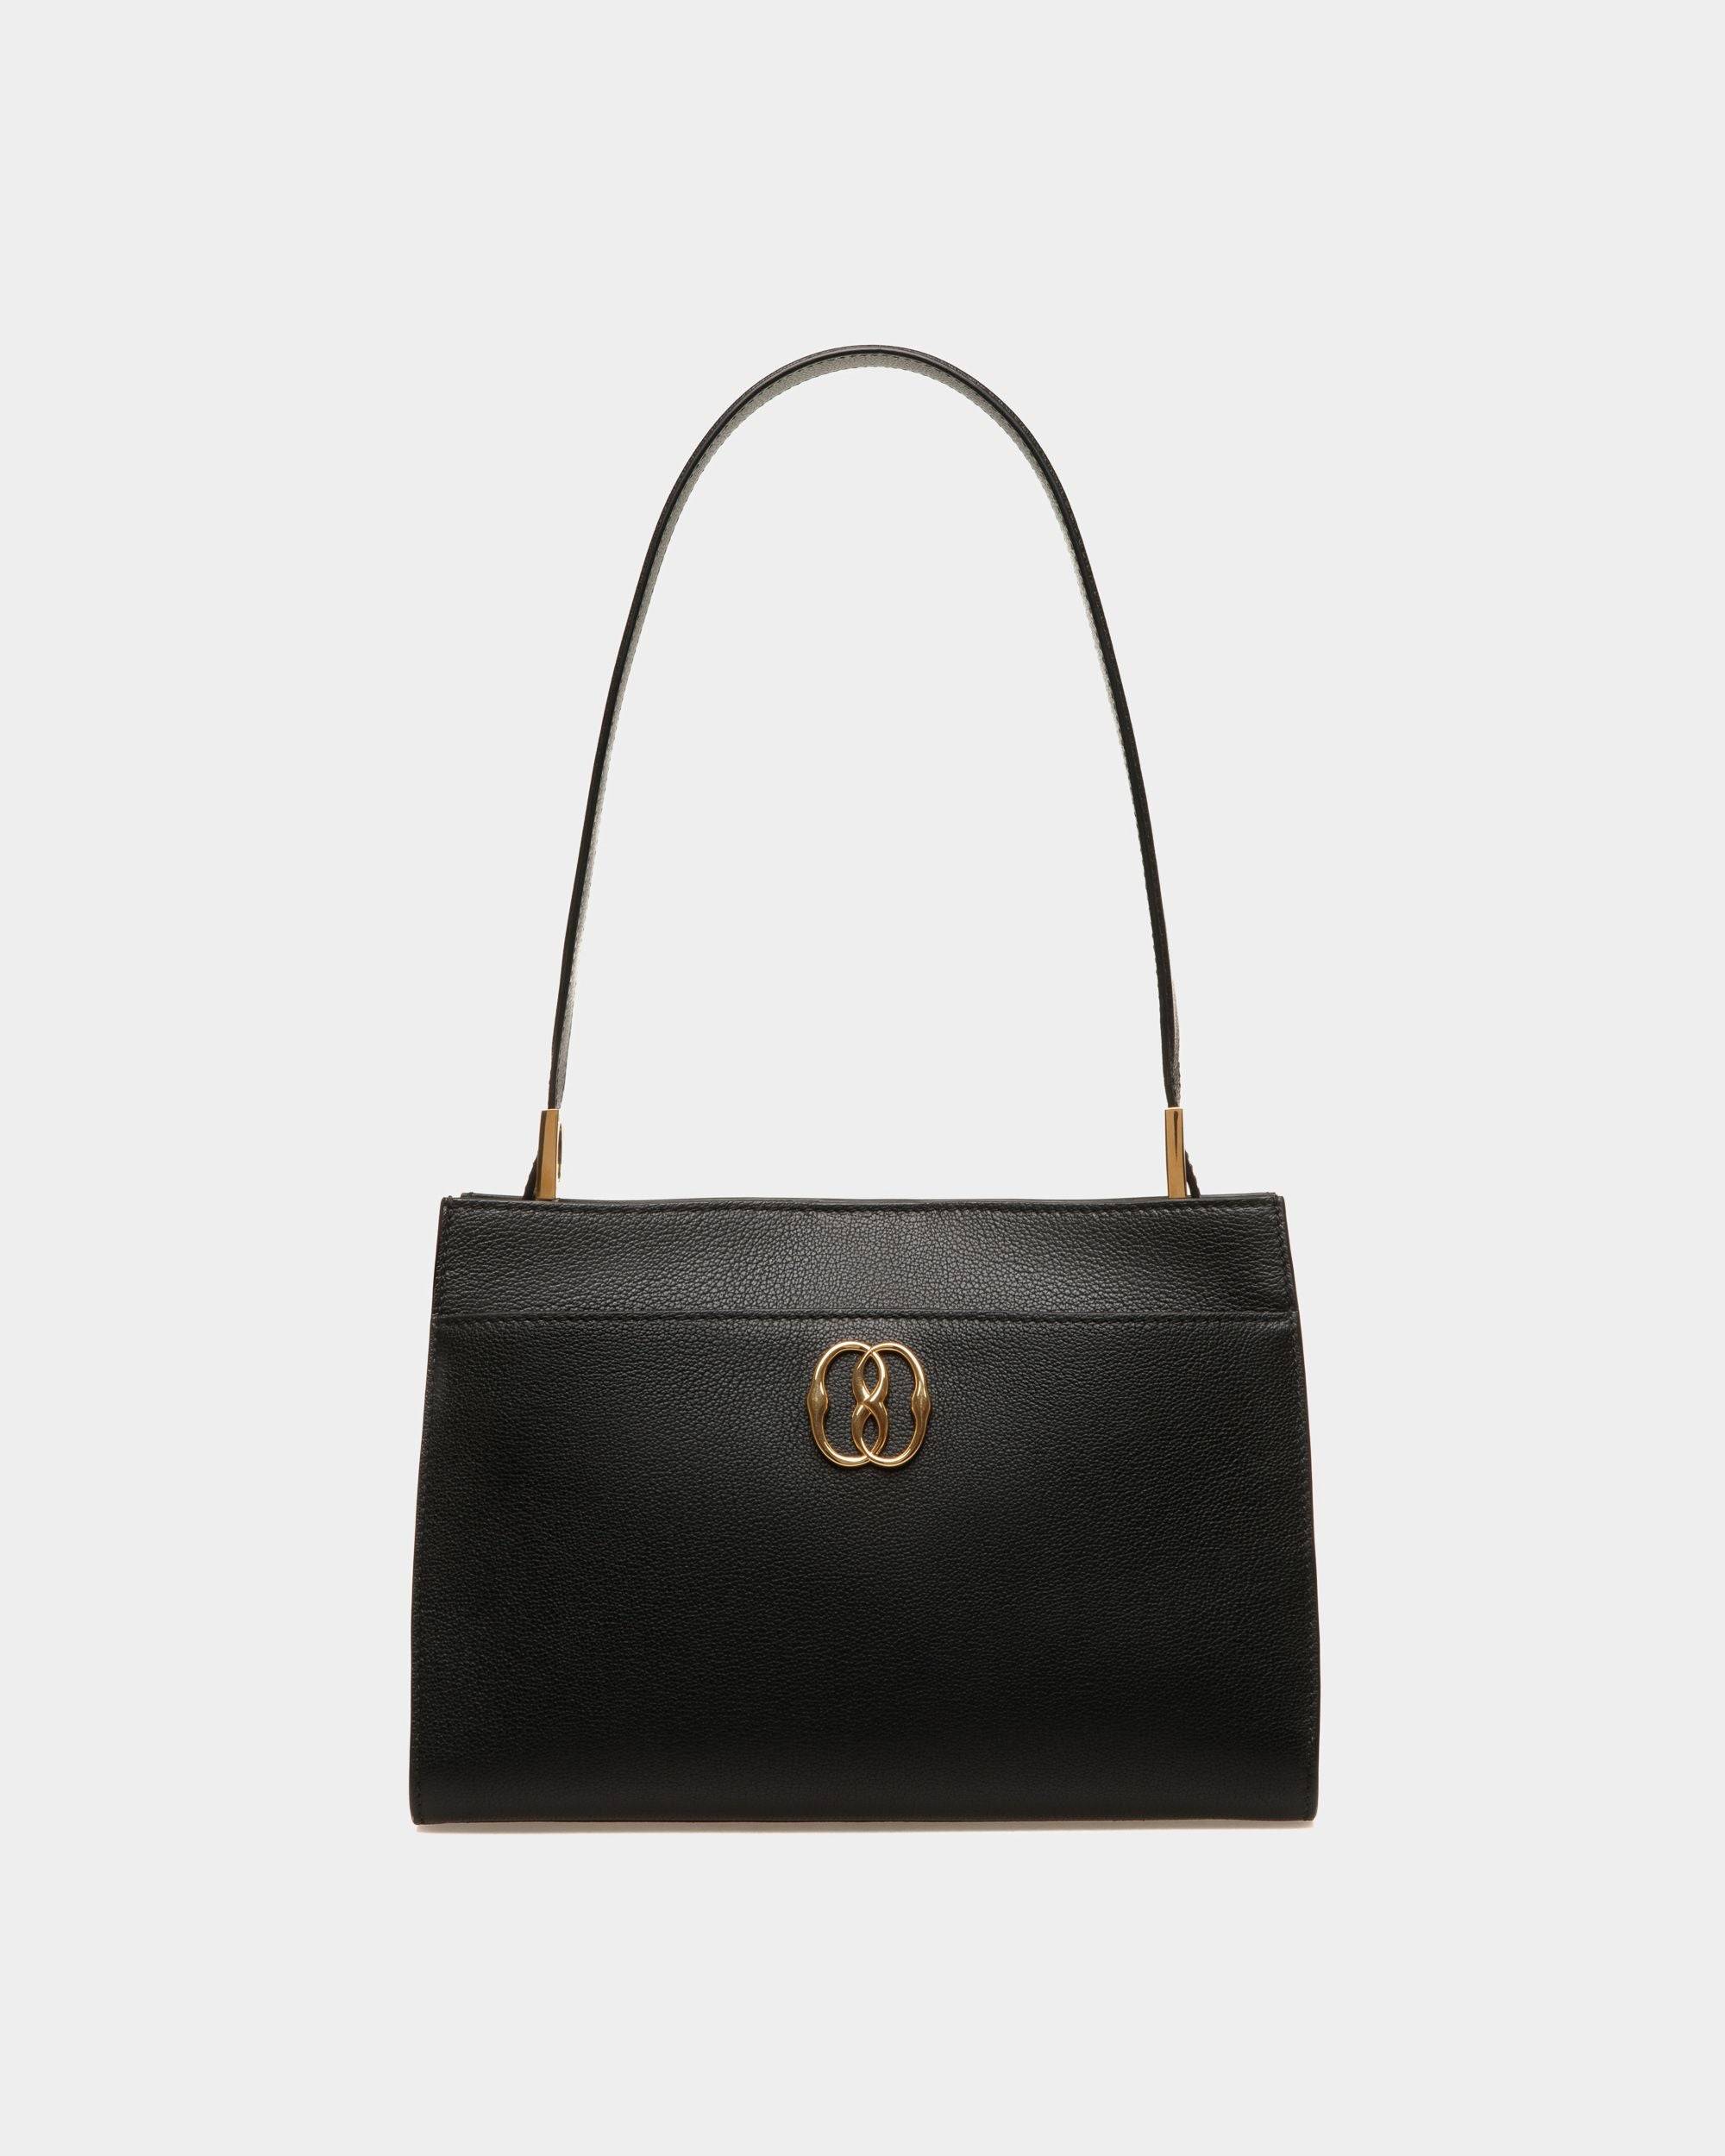 Emblem | Women's Shoulder Bag in Black Grained Leather | Bally | Still Life Front